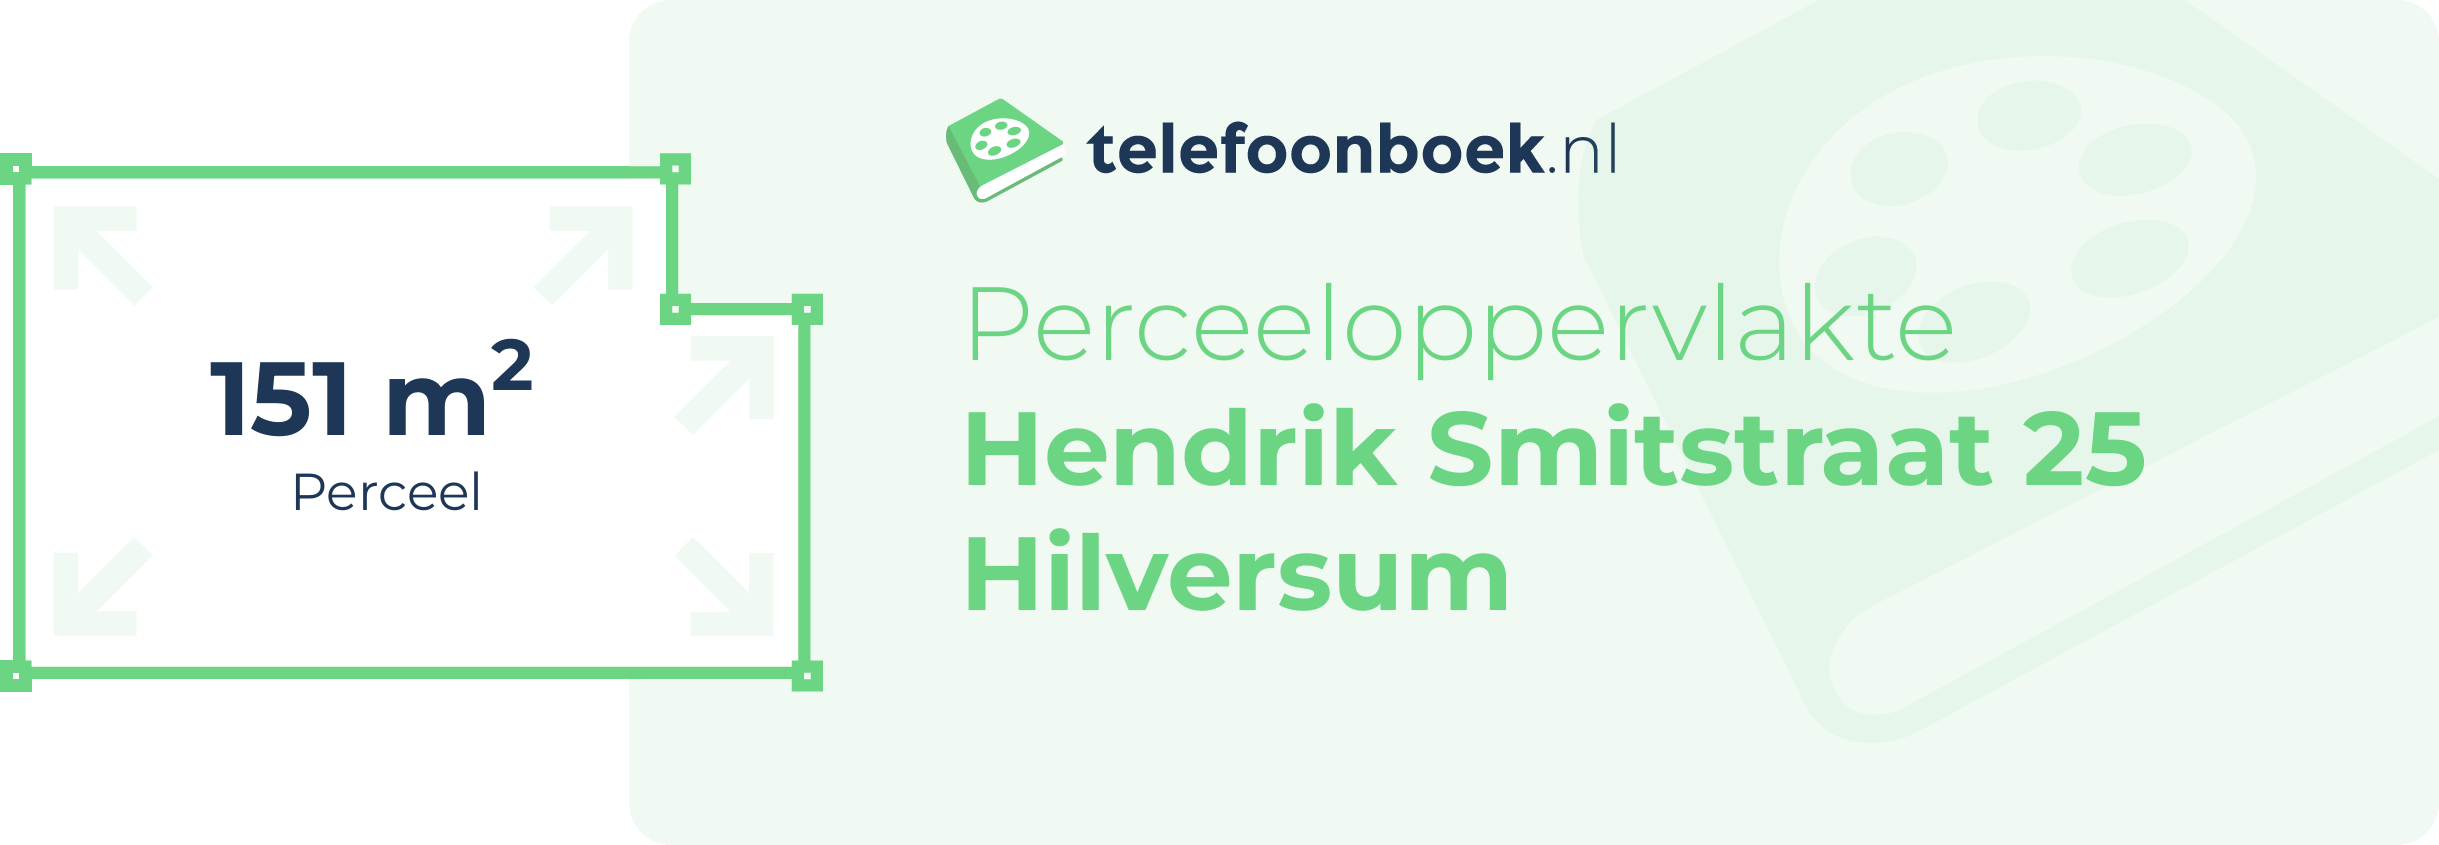 Perceeloppervlakte Hendrik Smitstraat 25 Hilversum